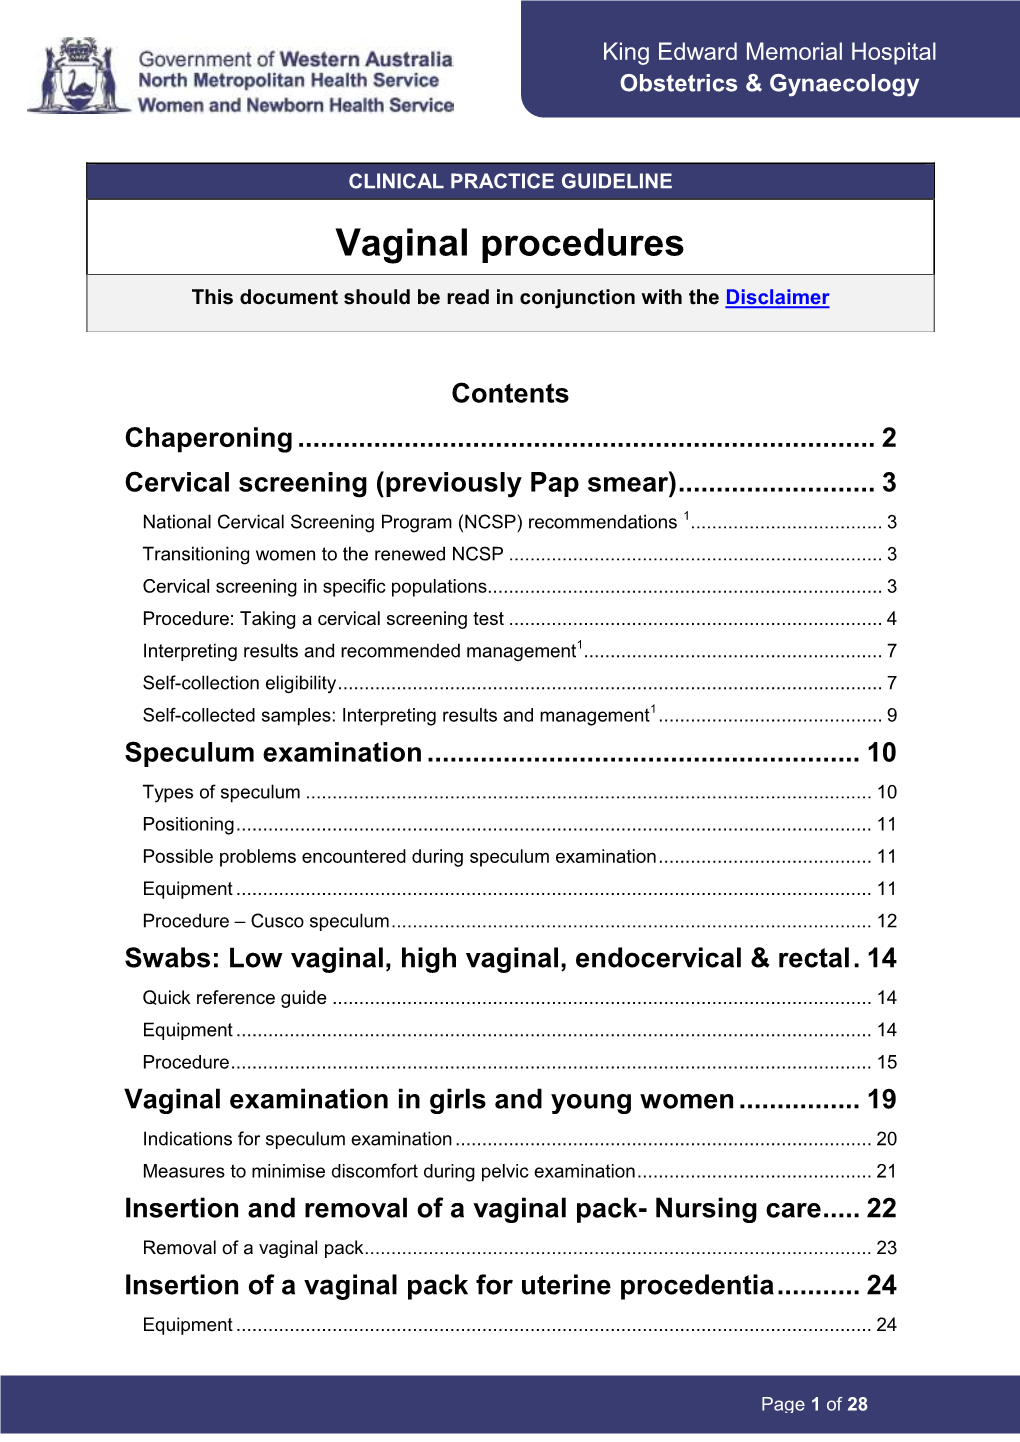 Vaginal Procedures